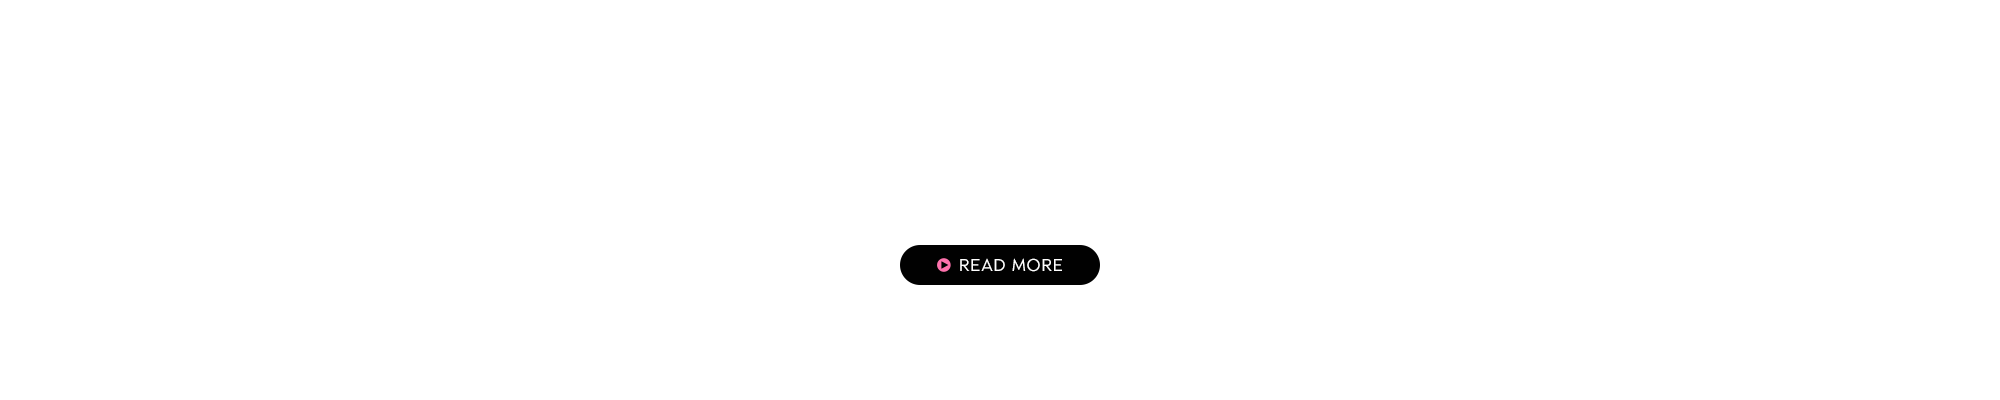 bnr_recruit_front